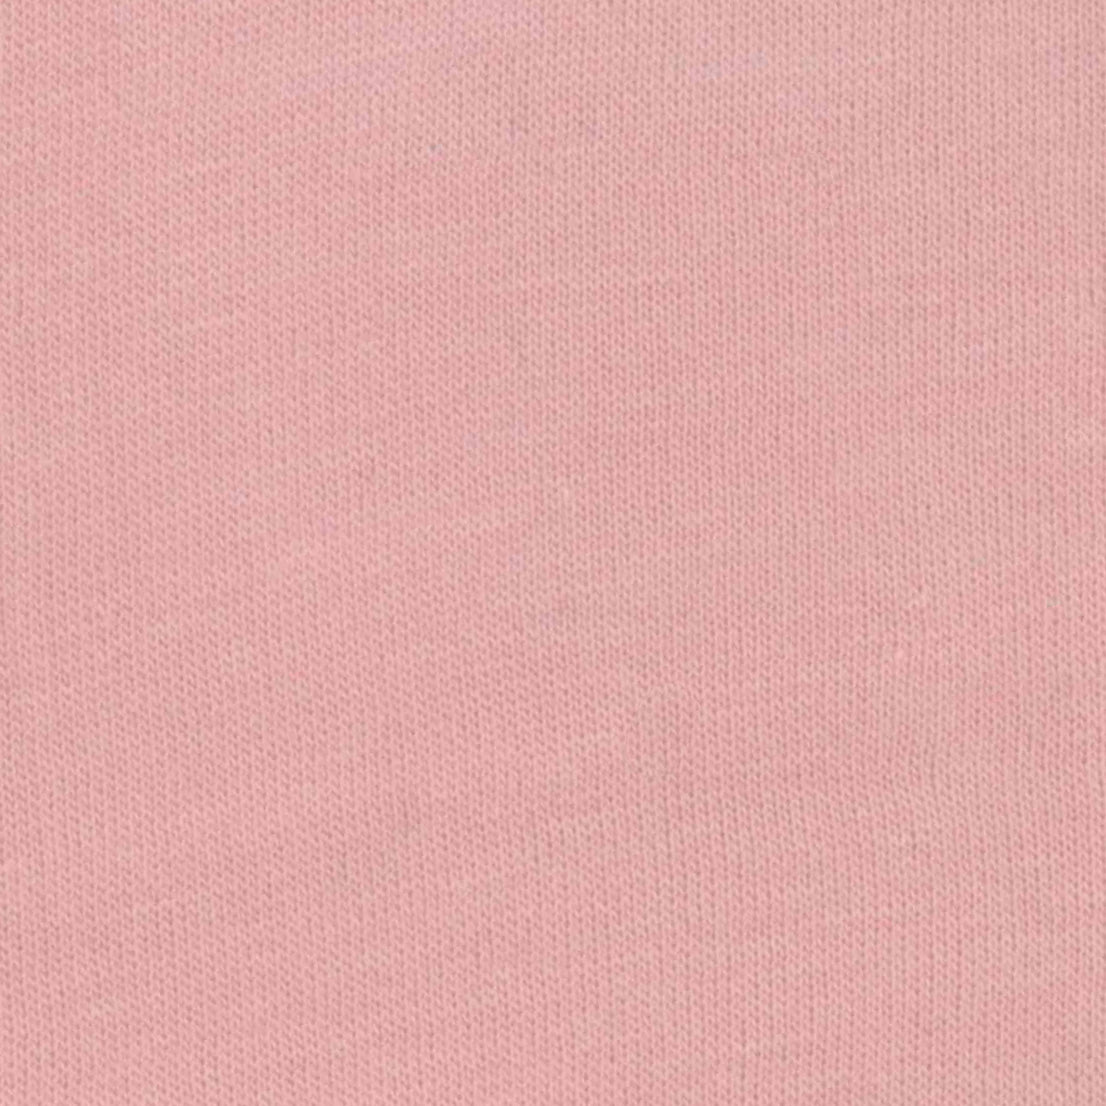 Cotton Modal Jersey Knit - Dusty Mauve